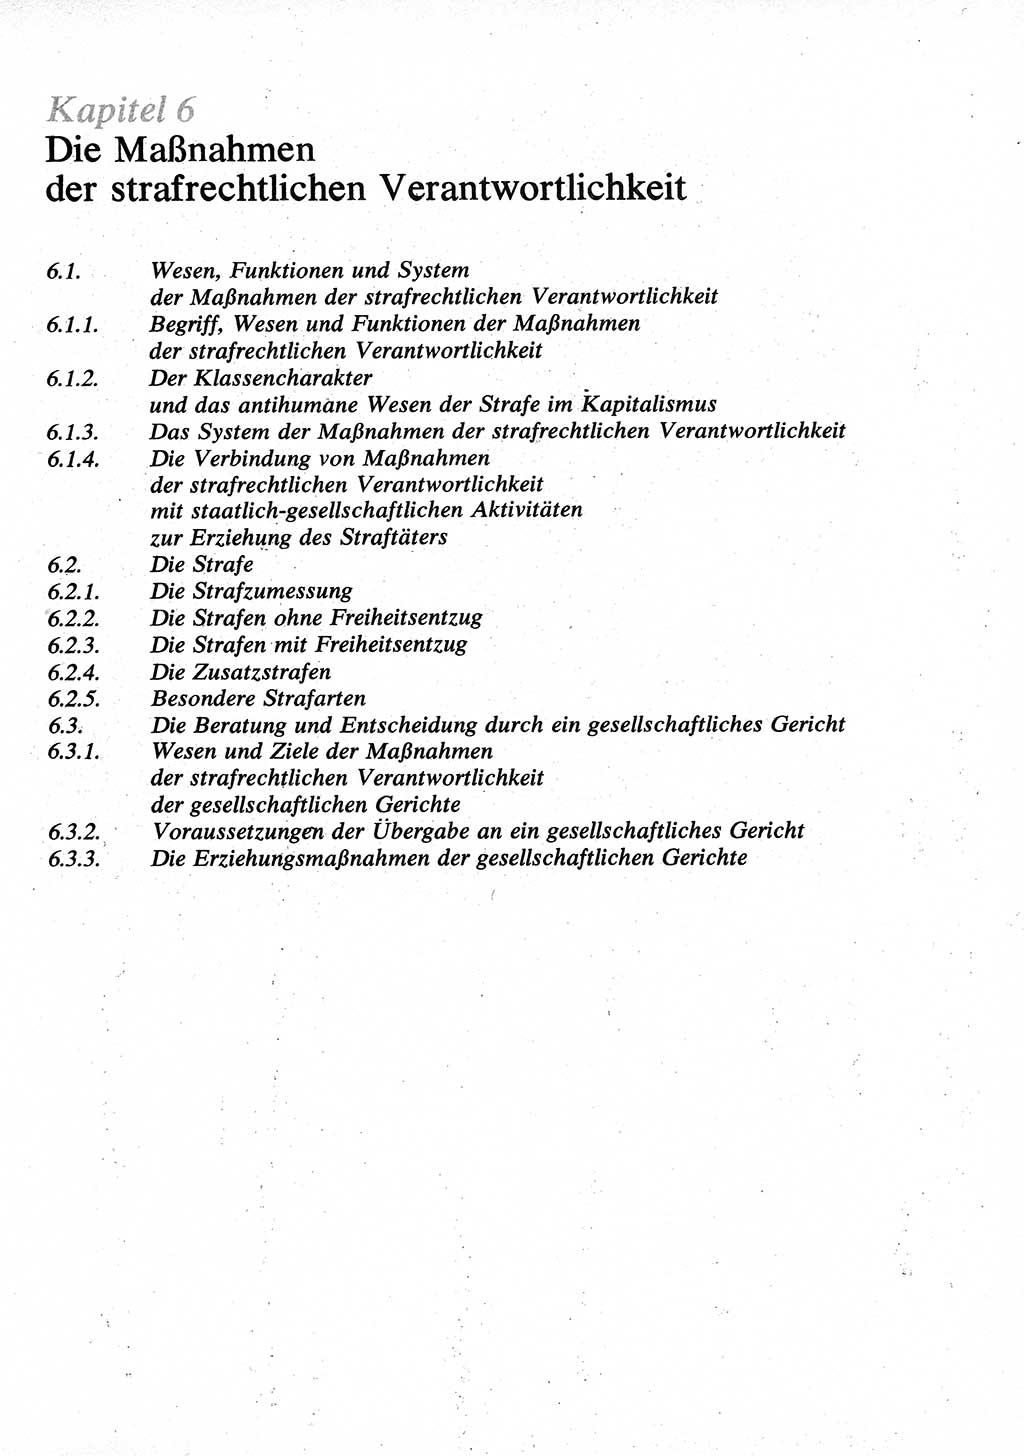 Strafrecht [Deutsche Demokratische Republik (DDR)], Allgemeiner Teil, Lehrbuch 1976, Seite 423 (Strafr. DDR AT Lb. 1976, S. 423)